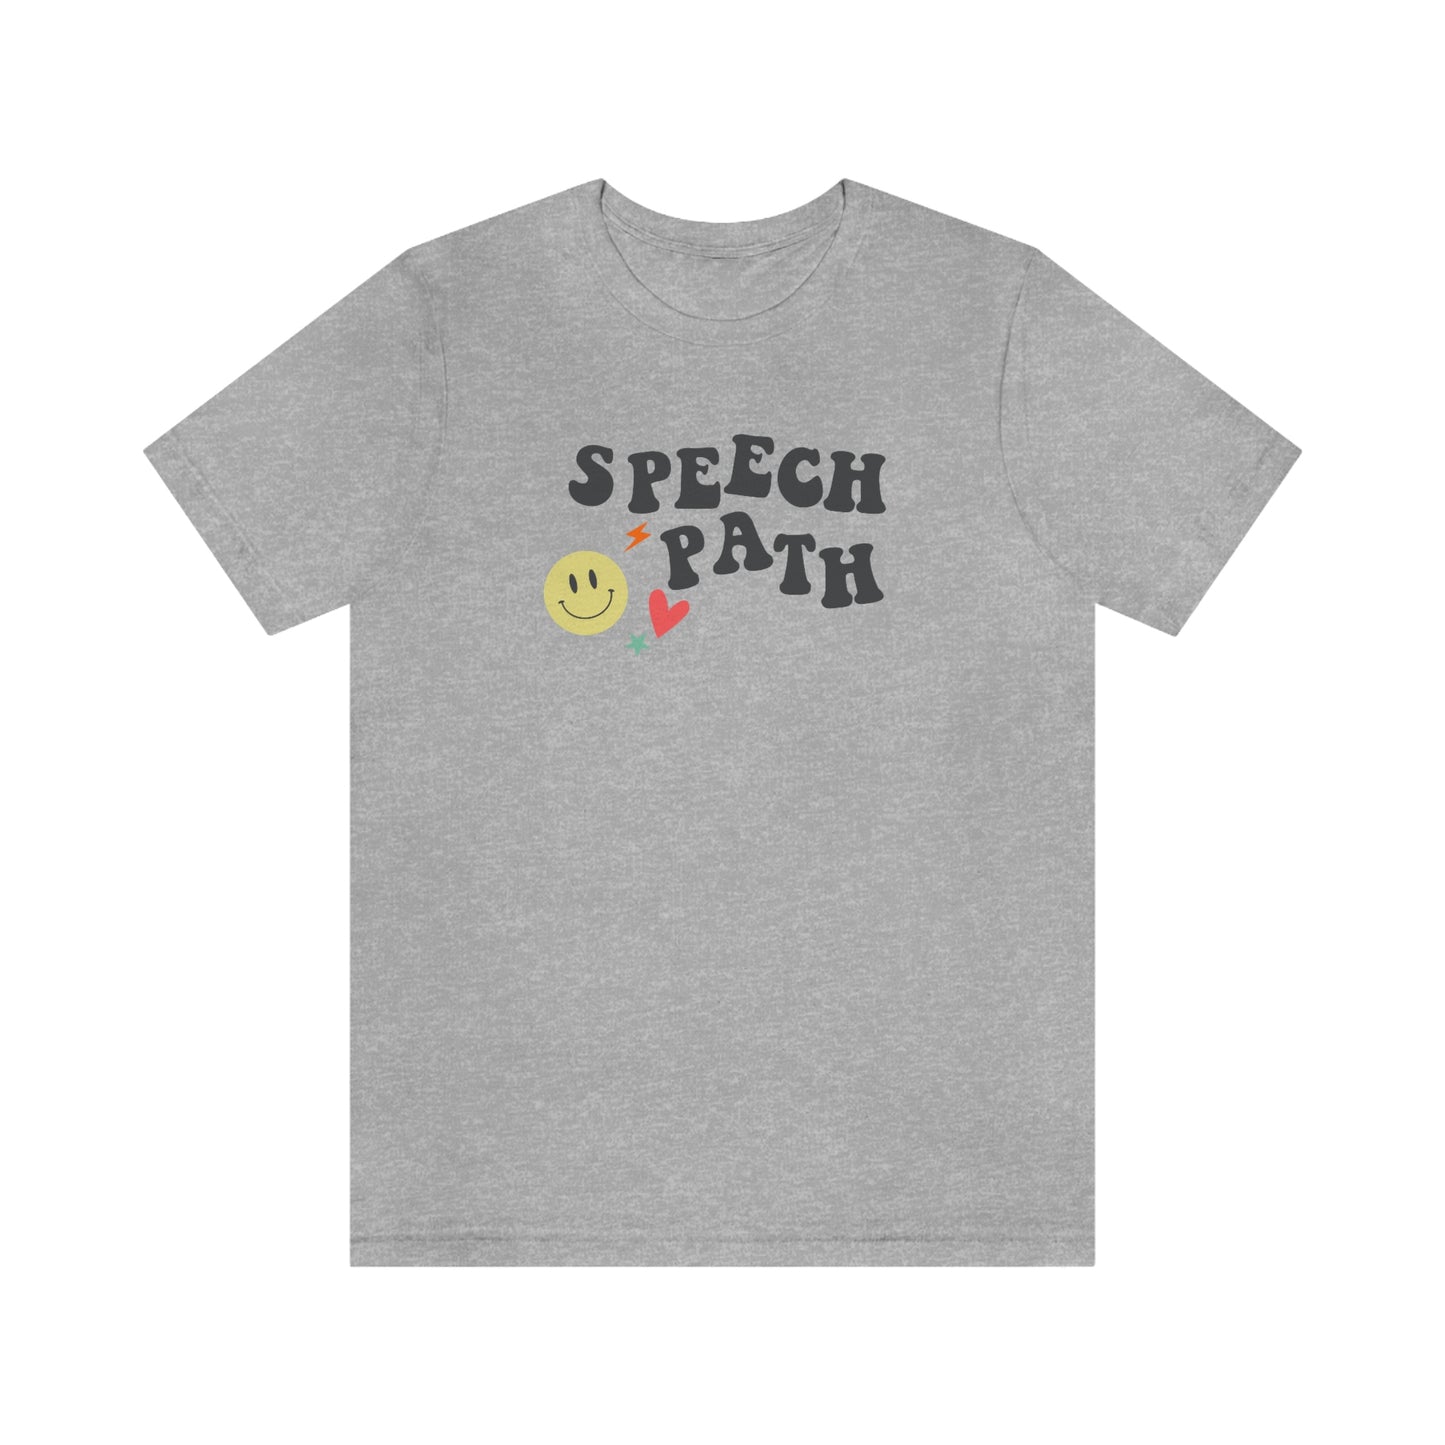 Speech Path Jersey T-Shirt